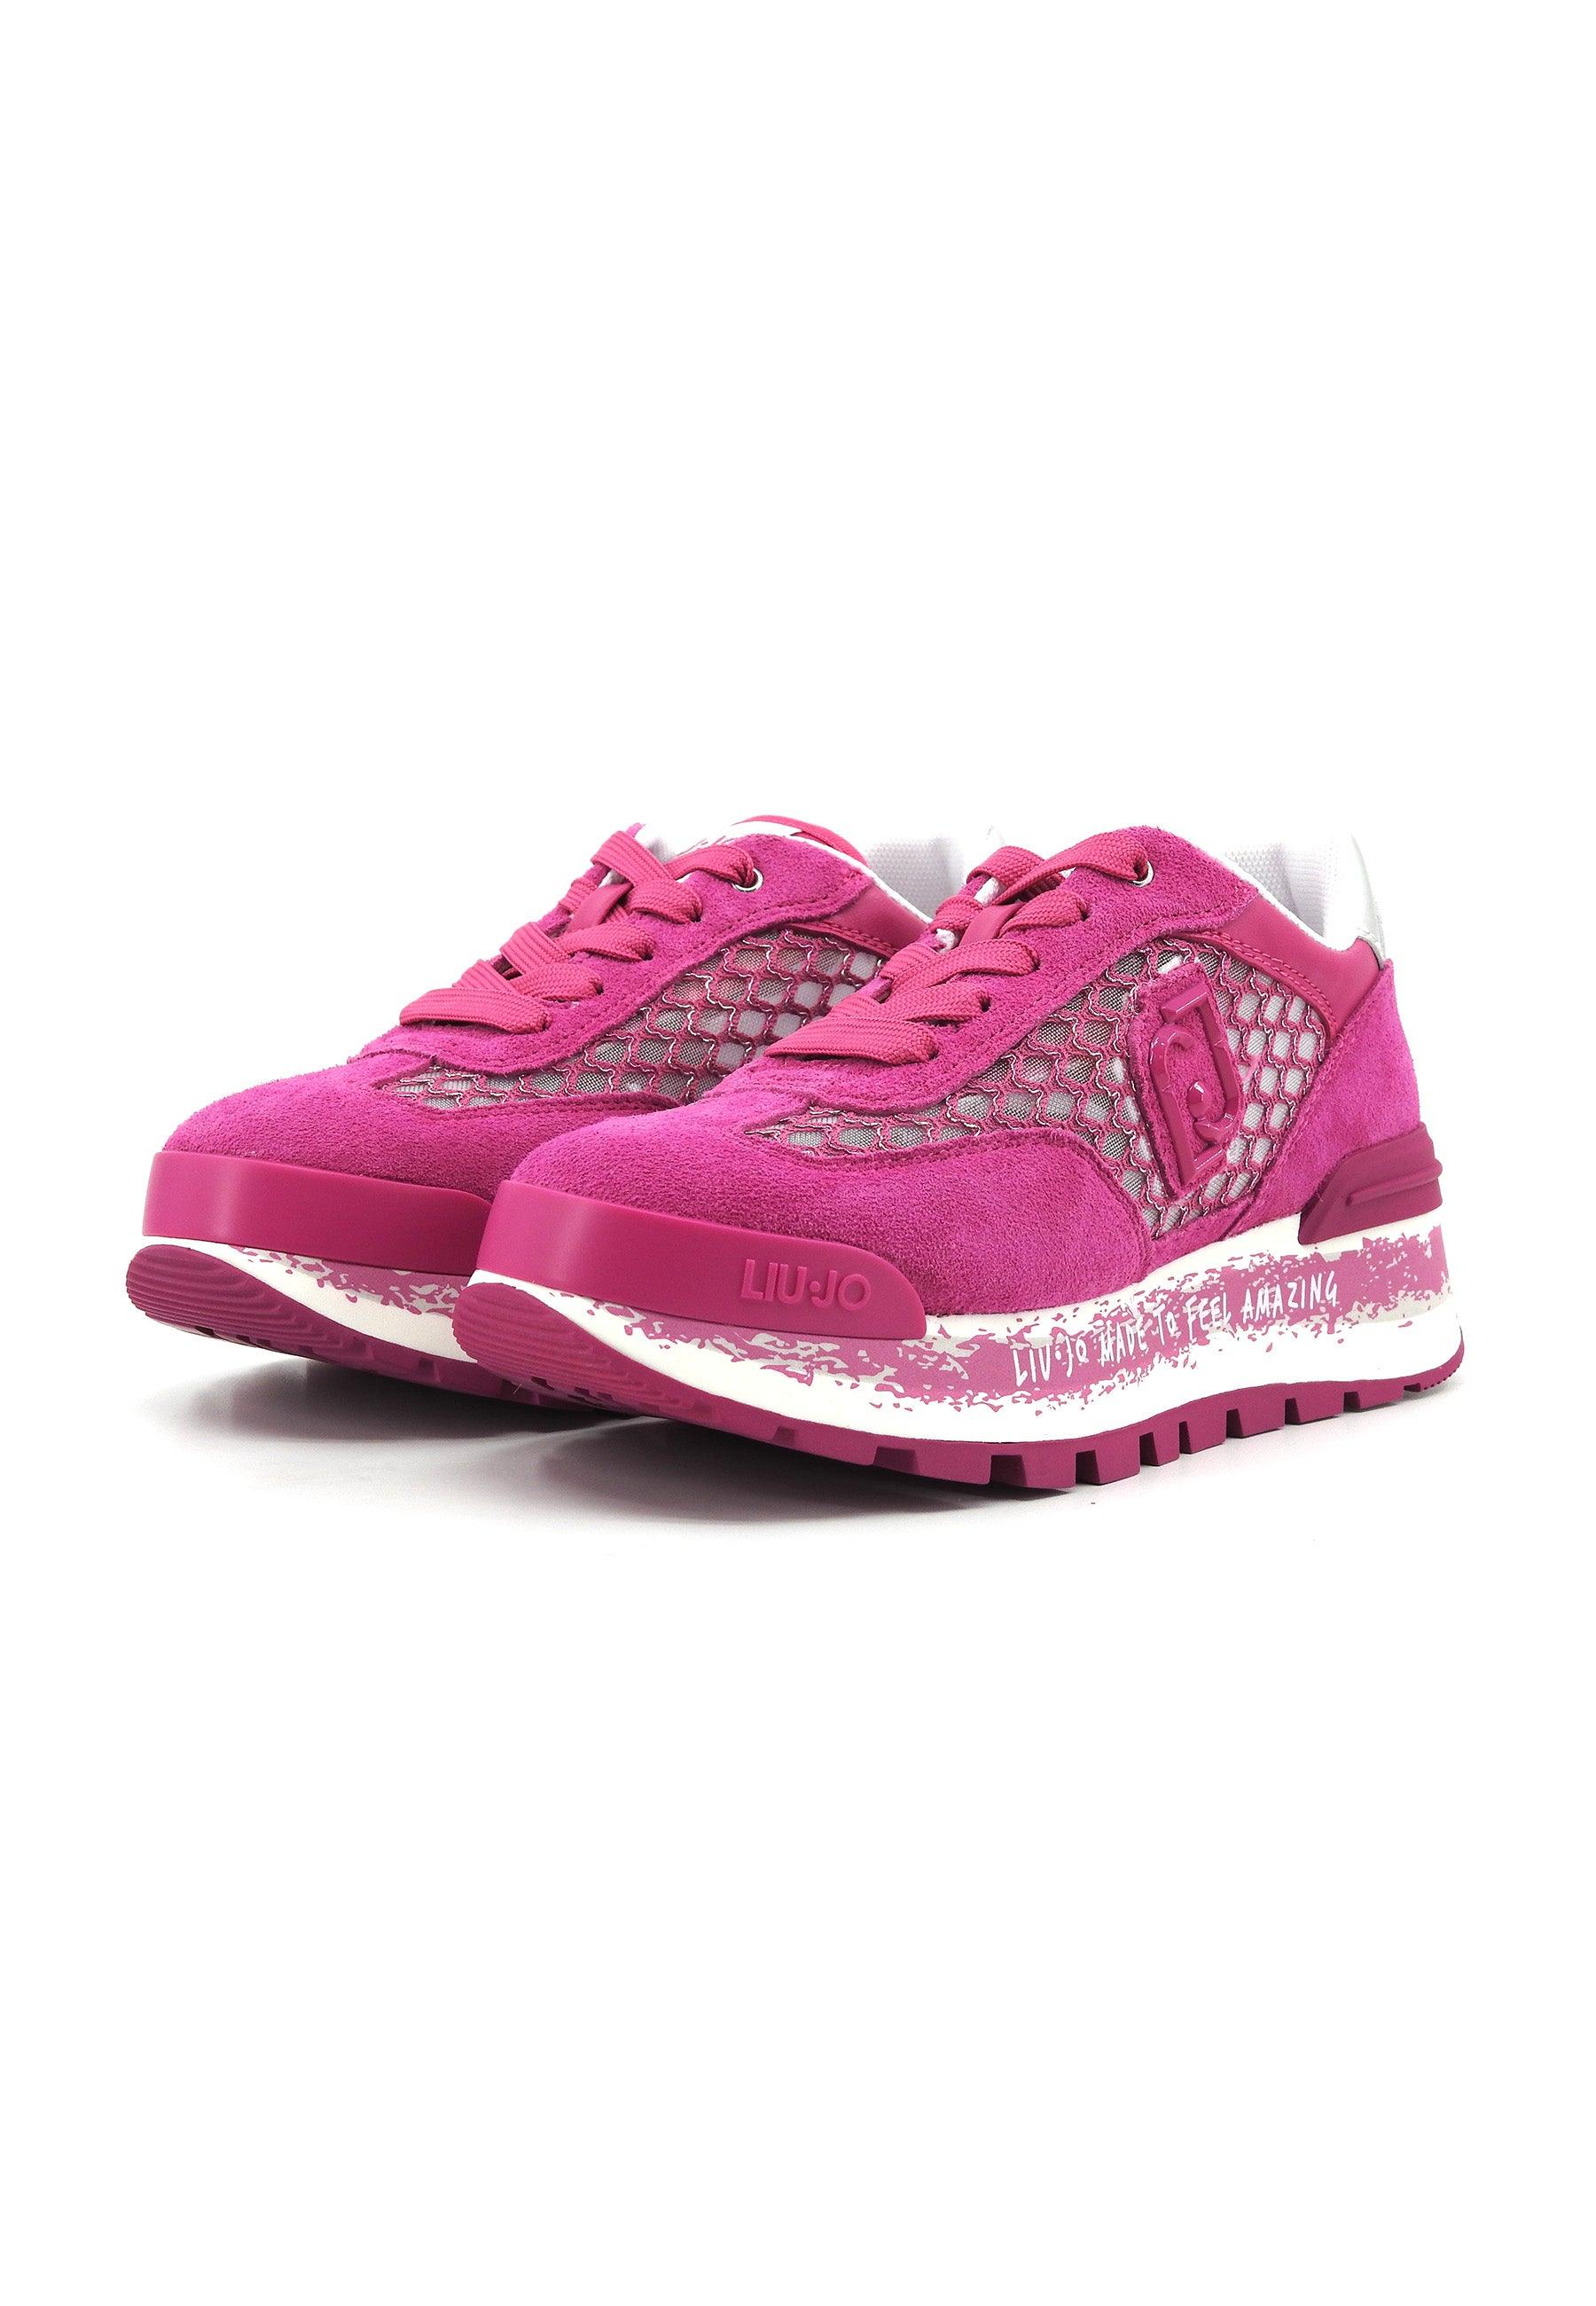 LIU JO Amazing 23 Sneaker Donna Pink Silver BA4001PX303 - Sandrini Calzature e Abbigliamento